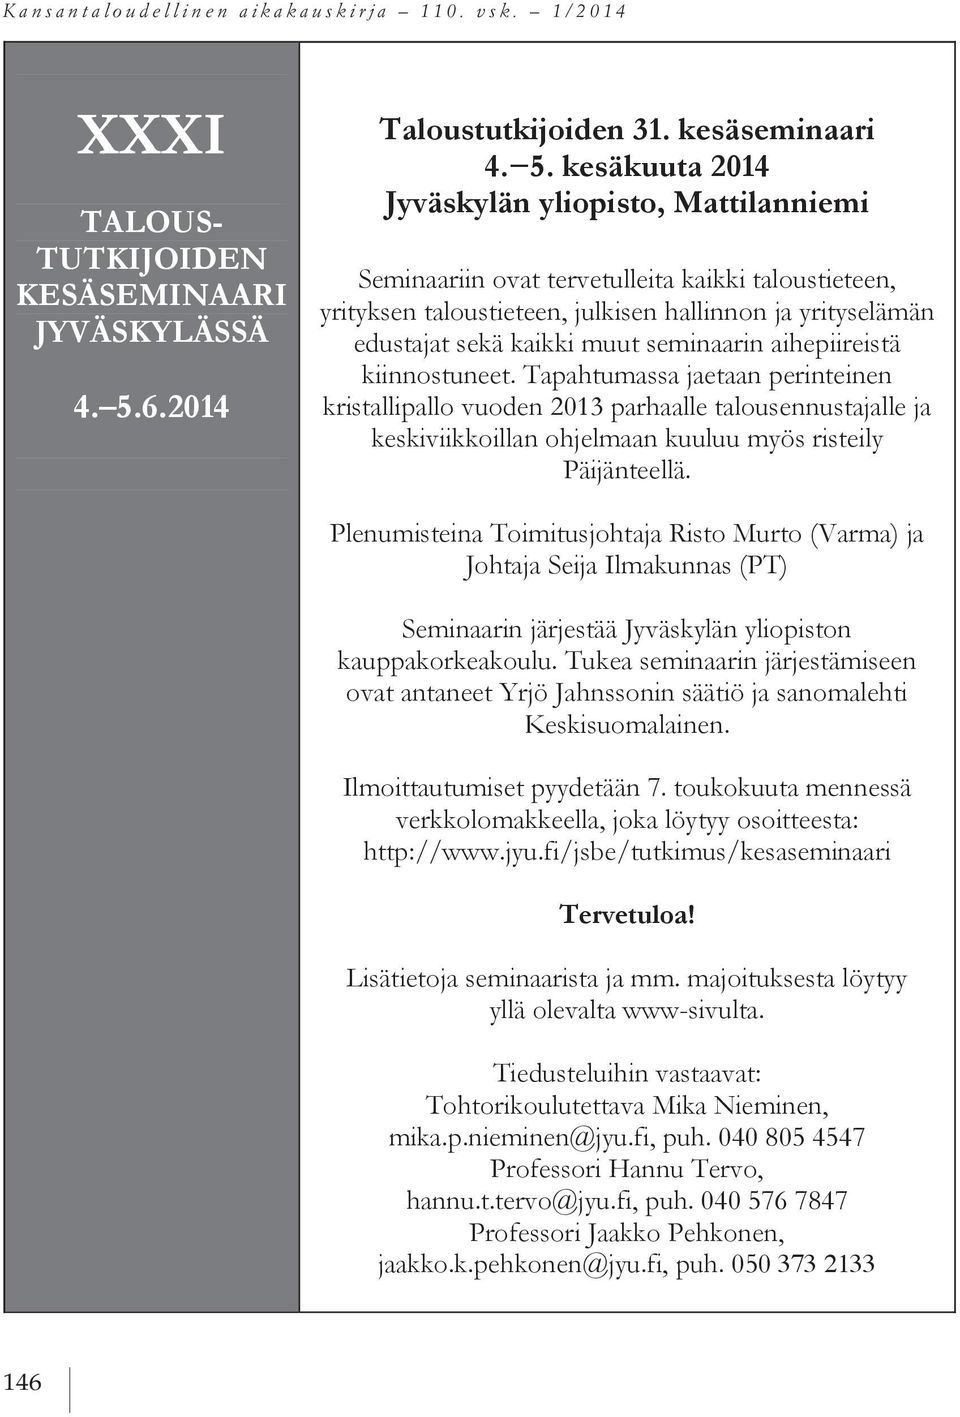 kesäkuuta 2014 Jyväskylän yliopisto, Mattilanniemi Seminaariin ovat tervetulleita kaikki taloustieteen, yrityksen taloustieteen, julkisen hallinnon ja yrityselämän edustajat sekä kaikki muut